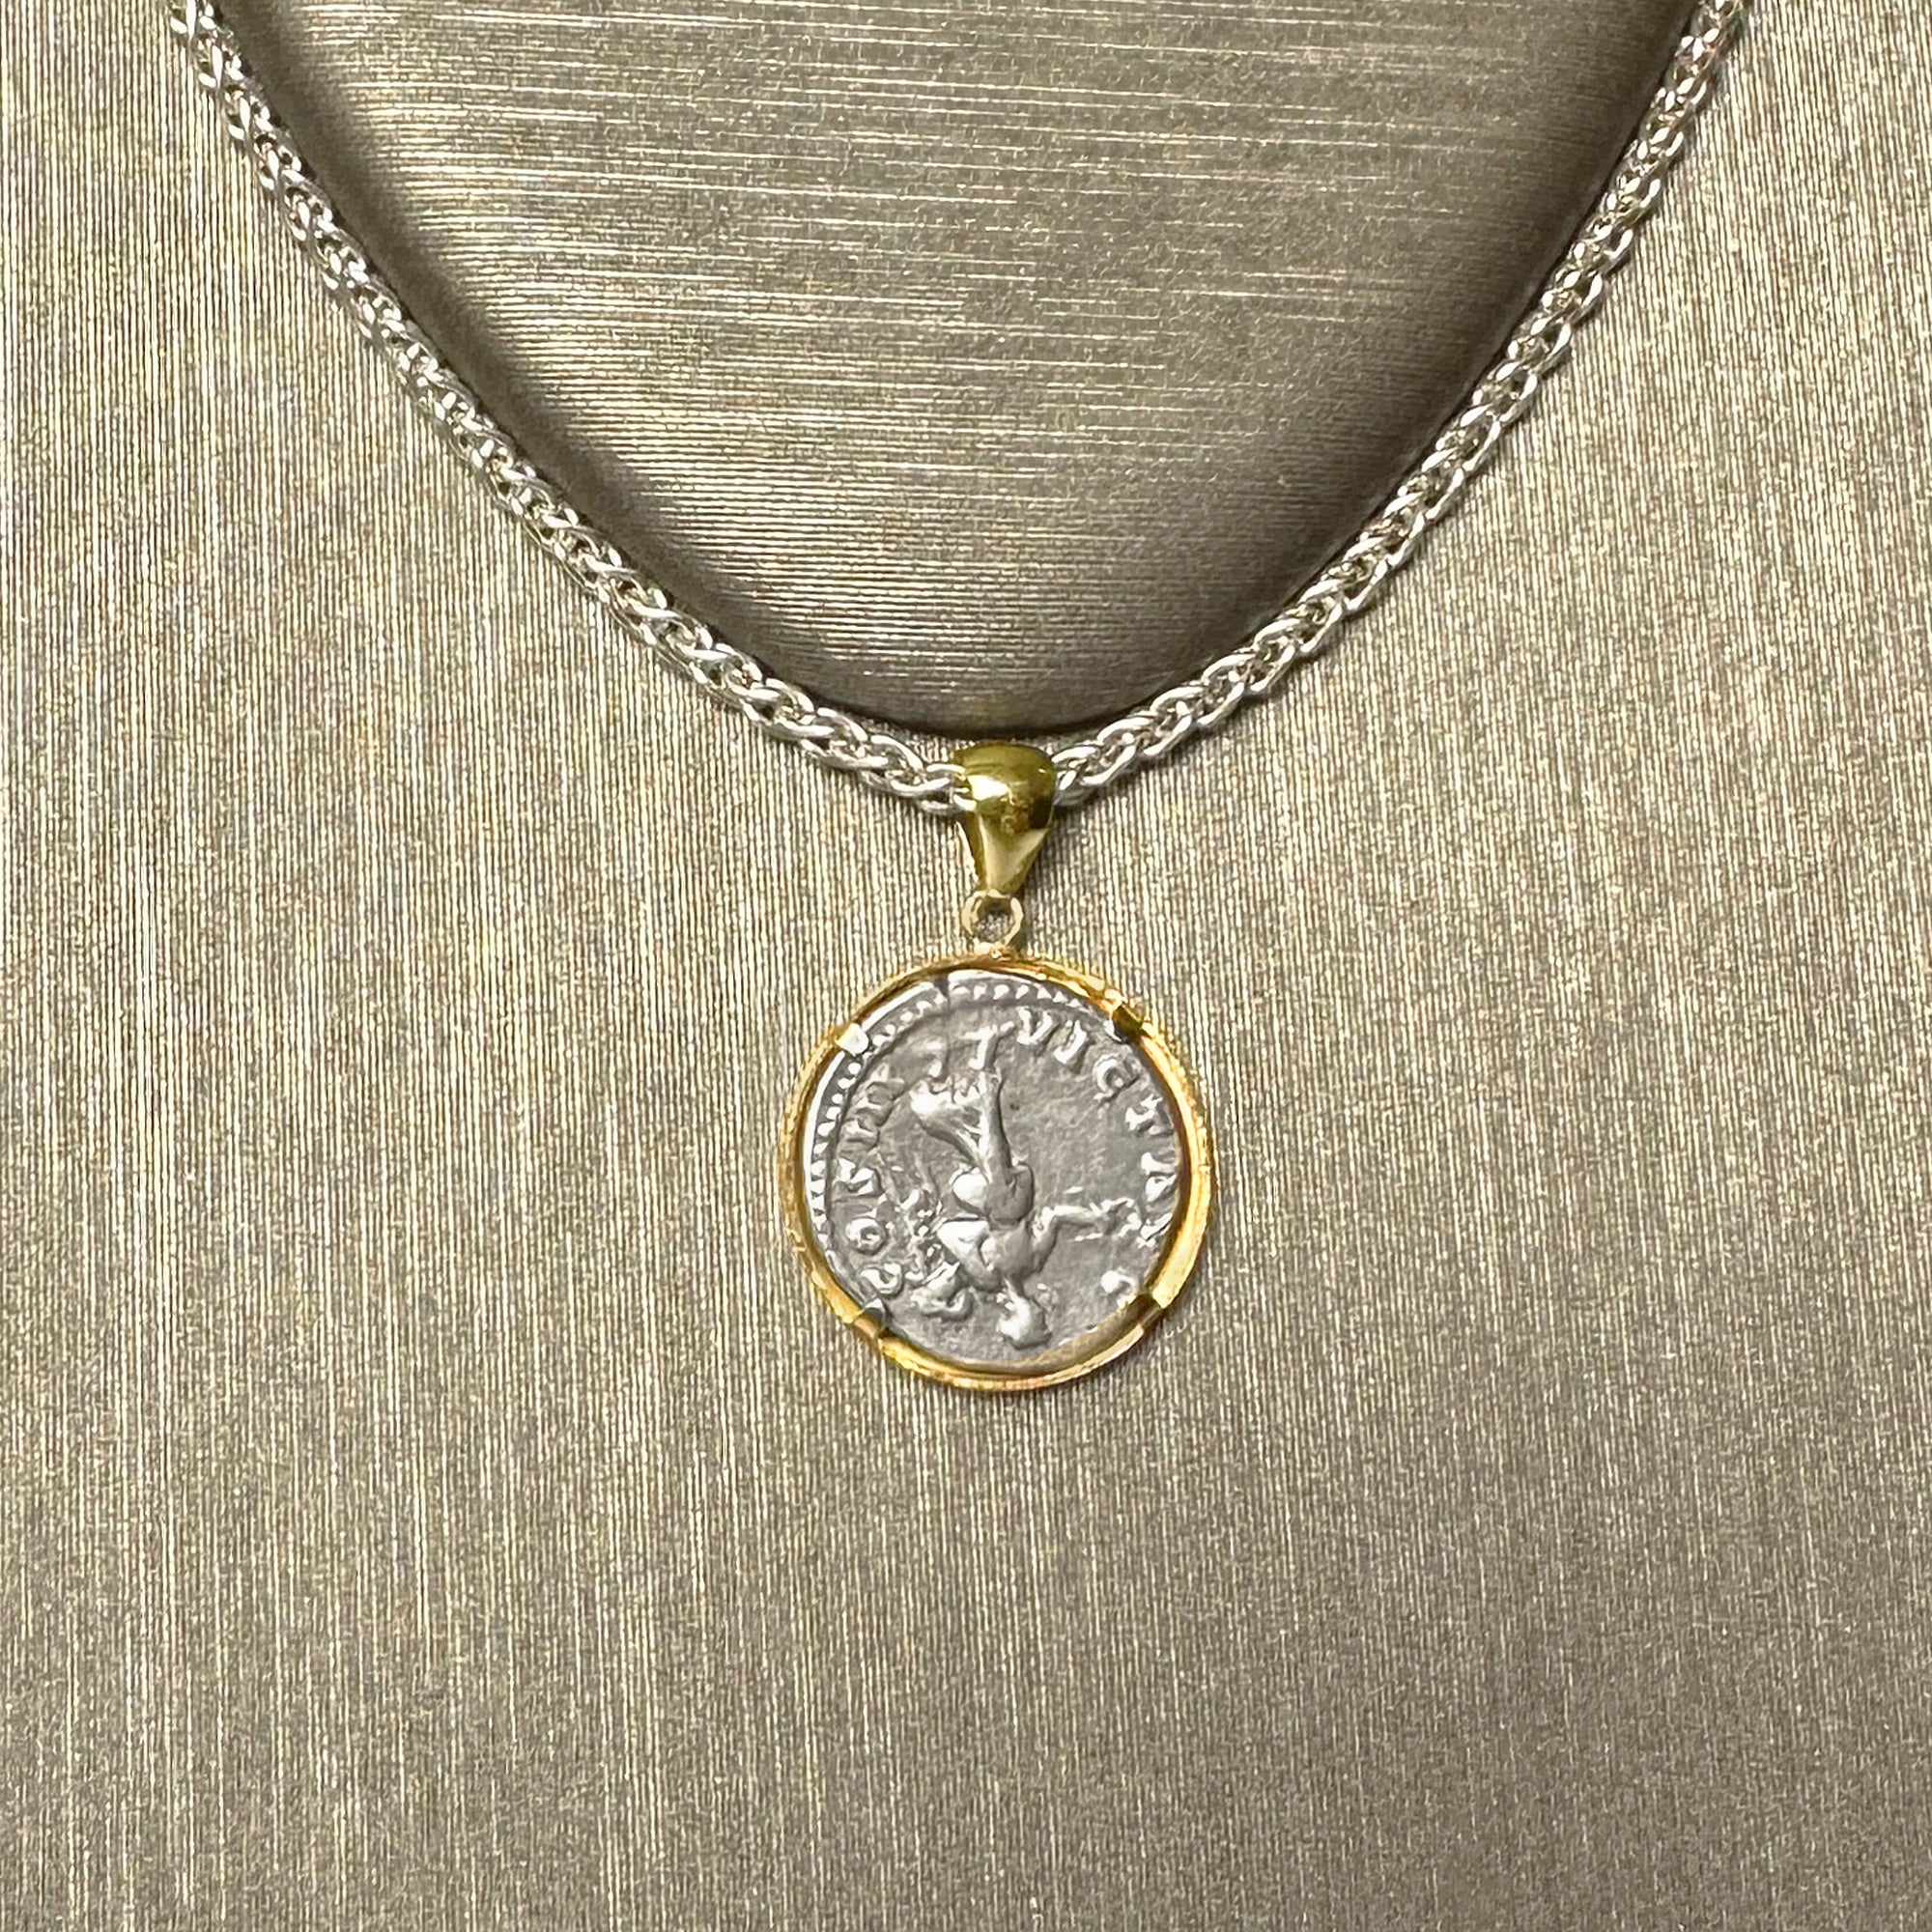 Genuine Roman Silver coin 18 Kt gold pendant depicting Emperor Marcus Aurelius